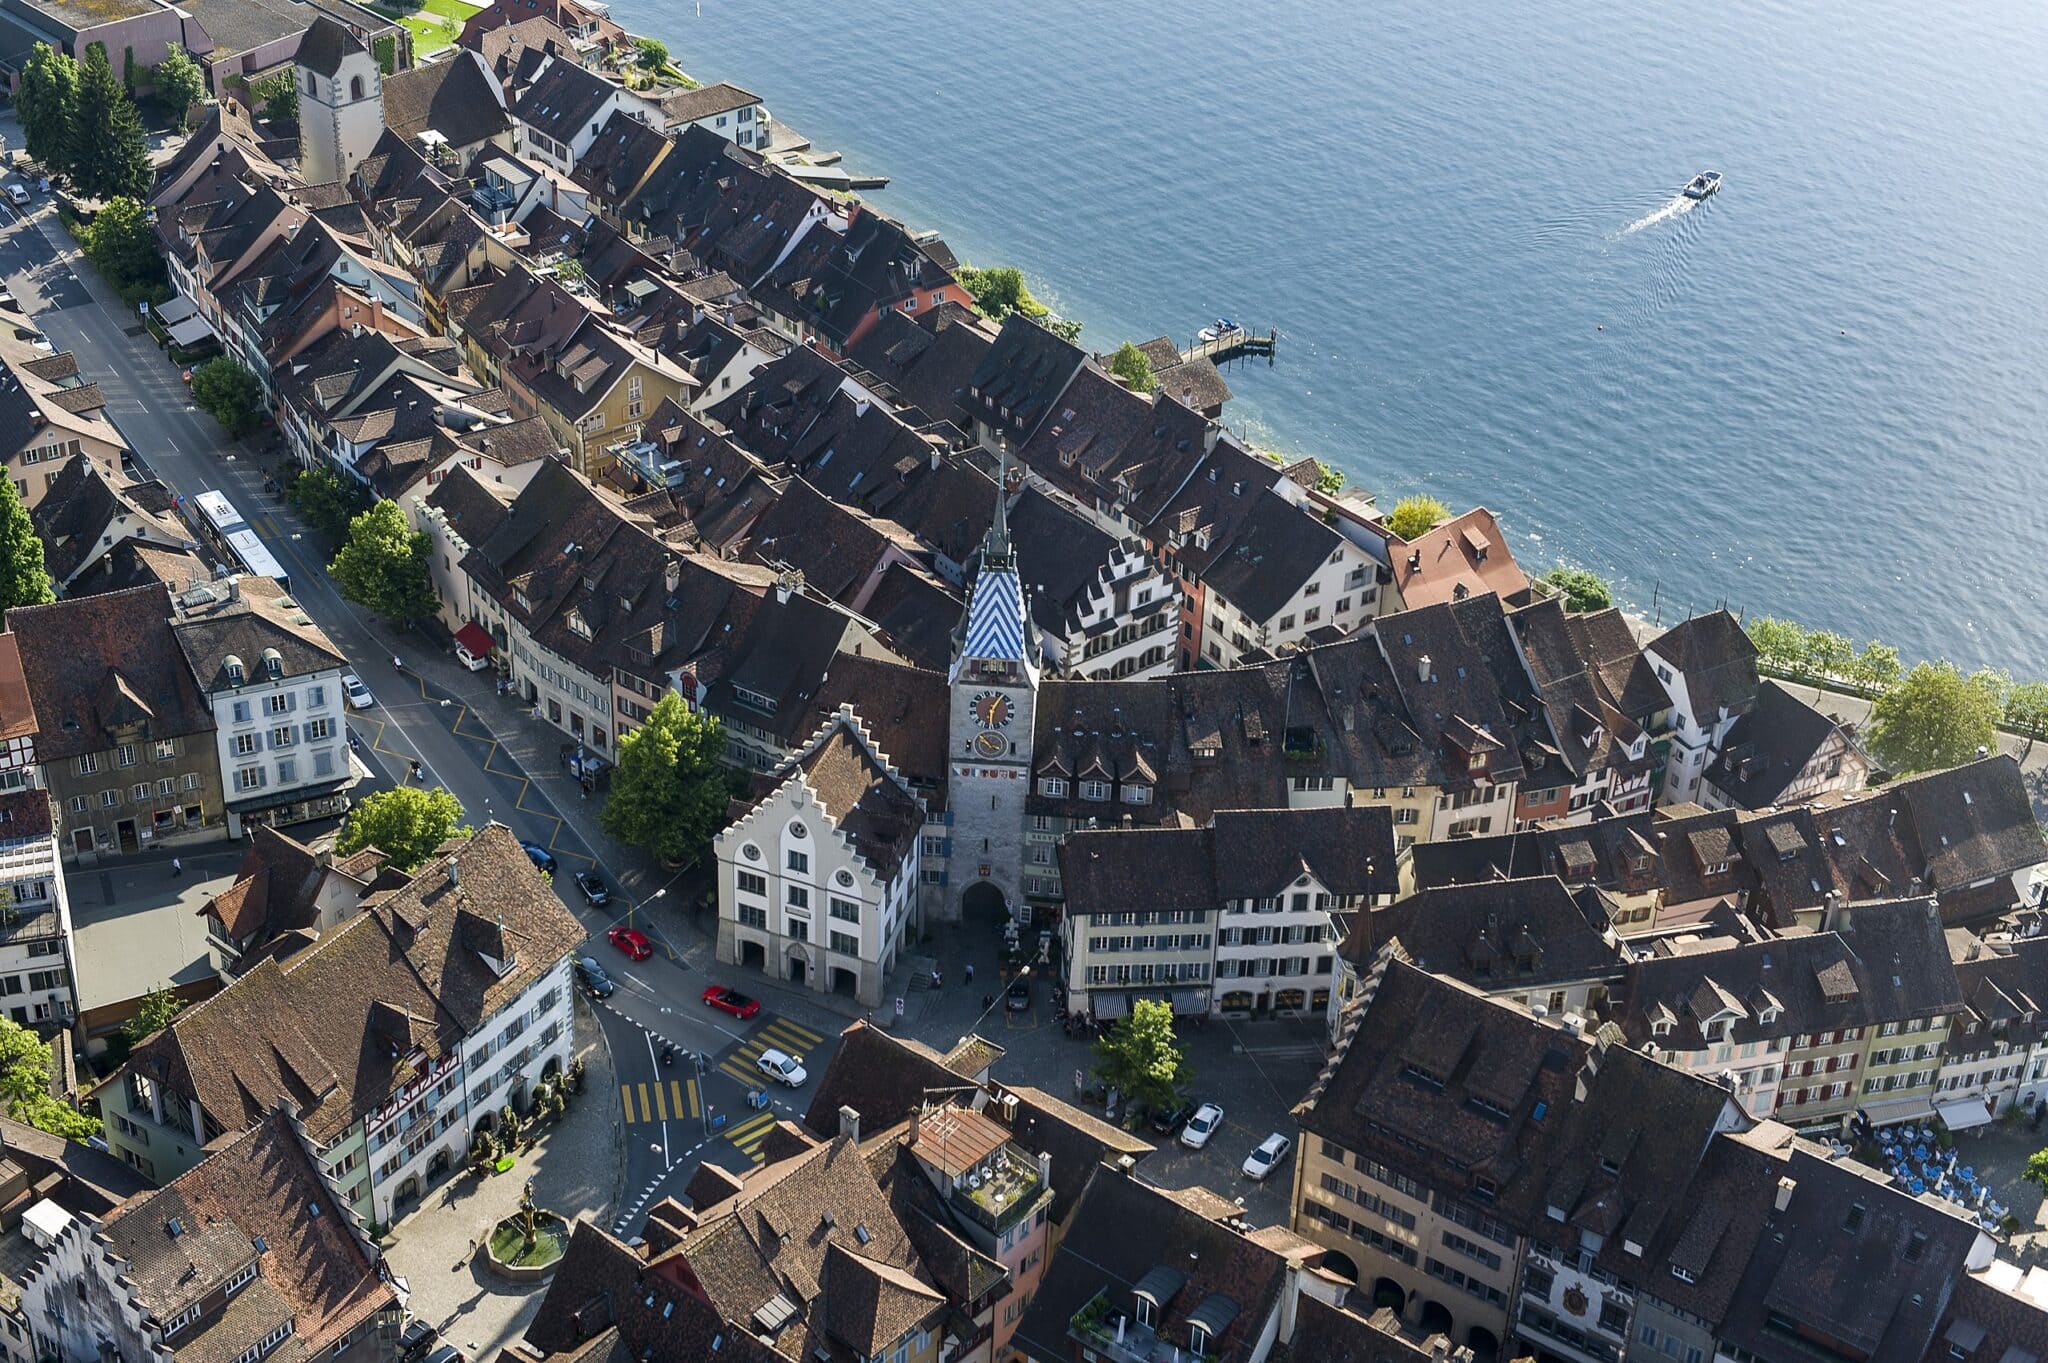 Zug, una hermosa ciudad de Suiza